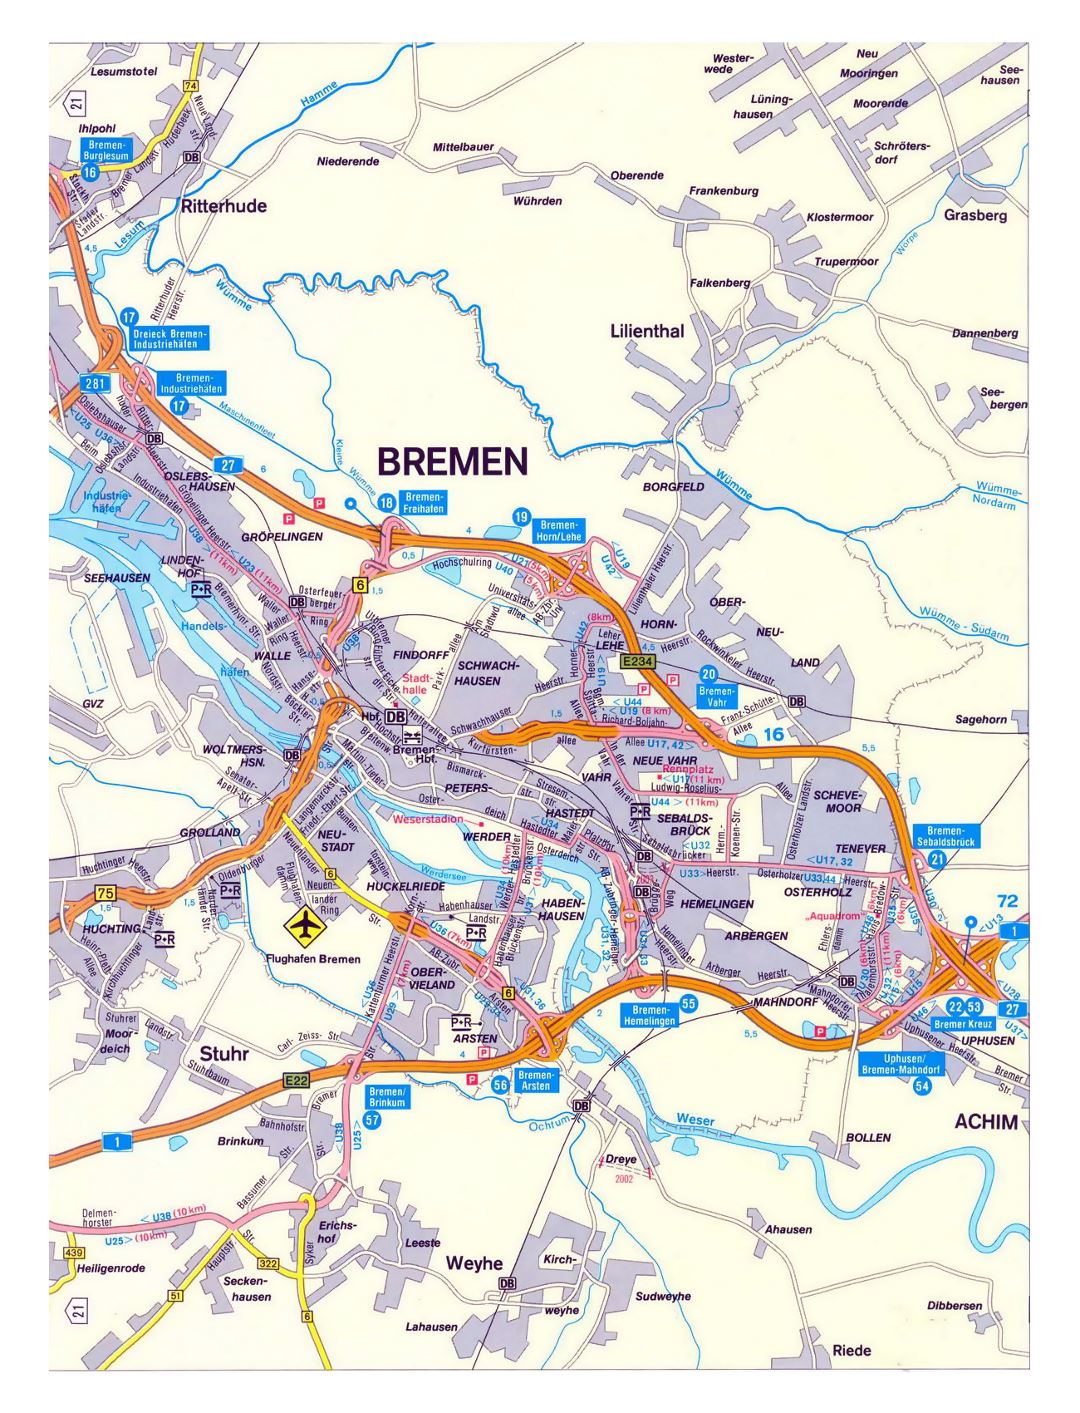 Большая детальная карта дорог города Бремен с другими пометками